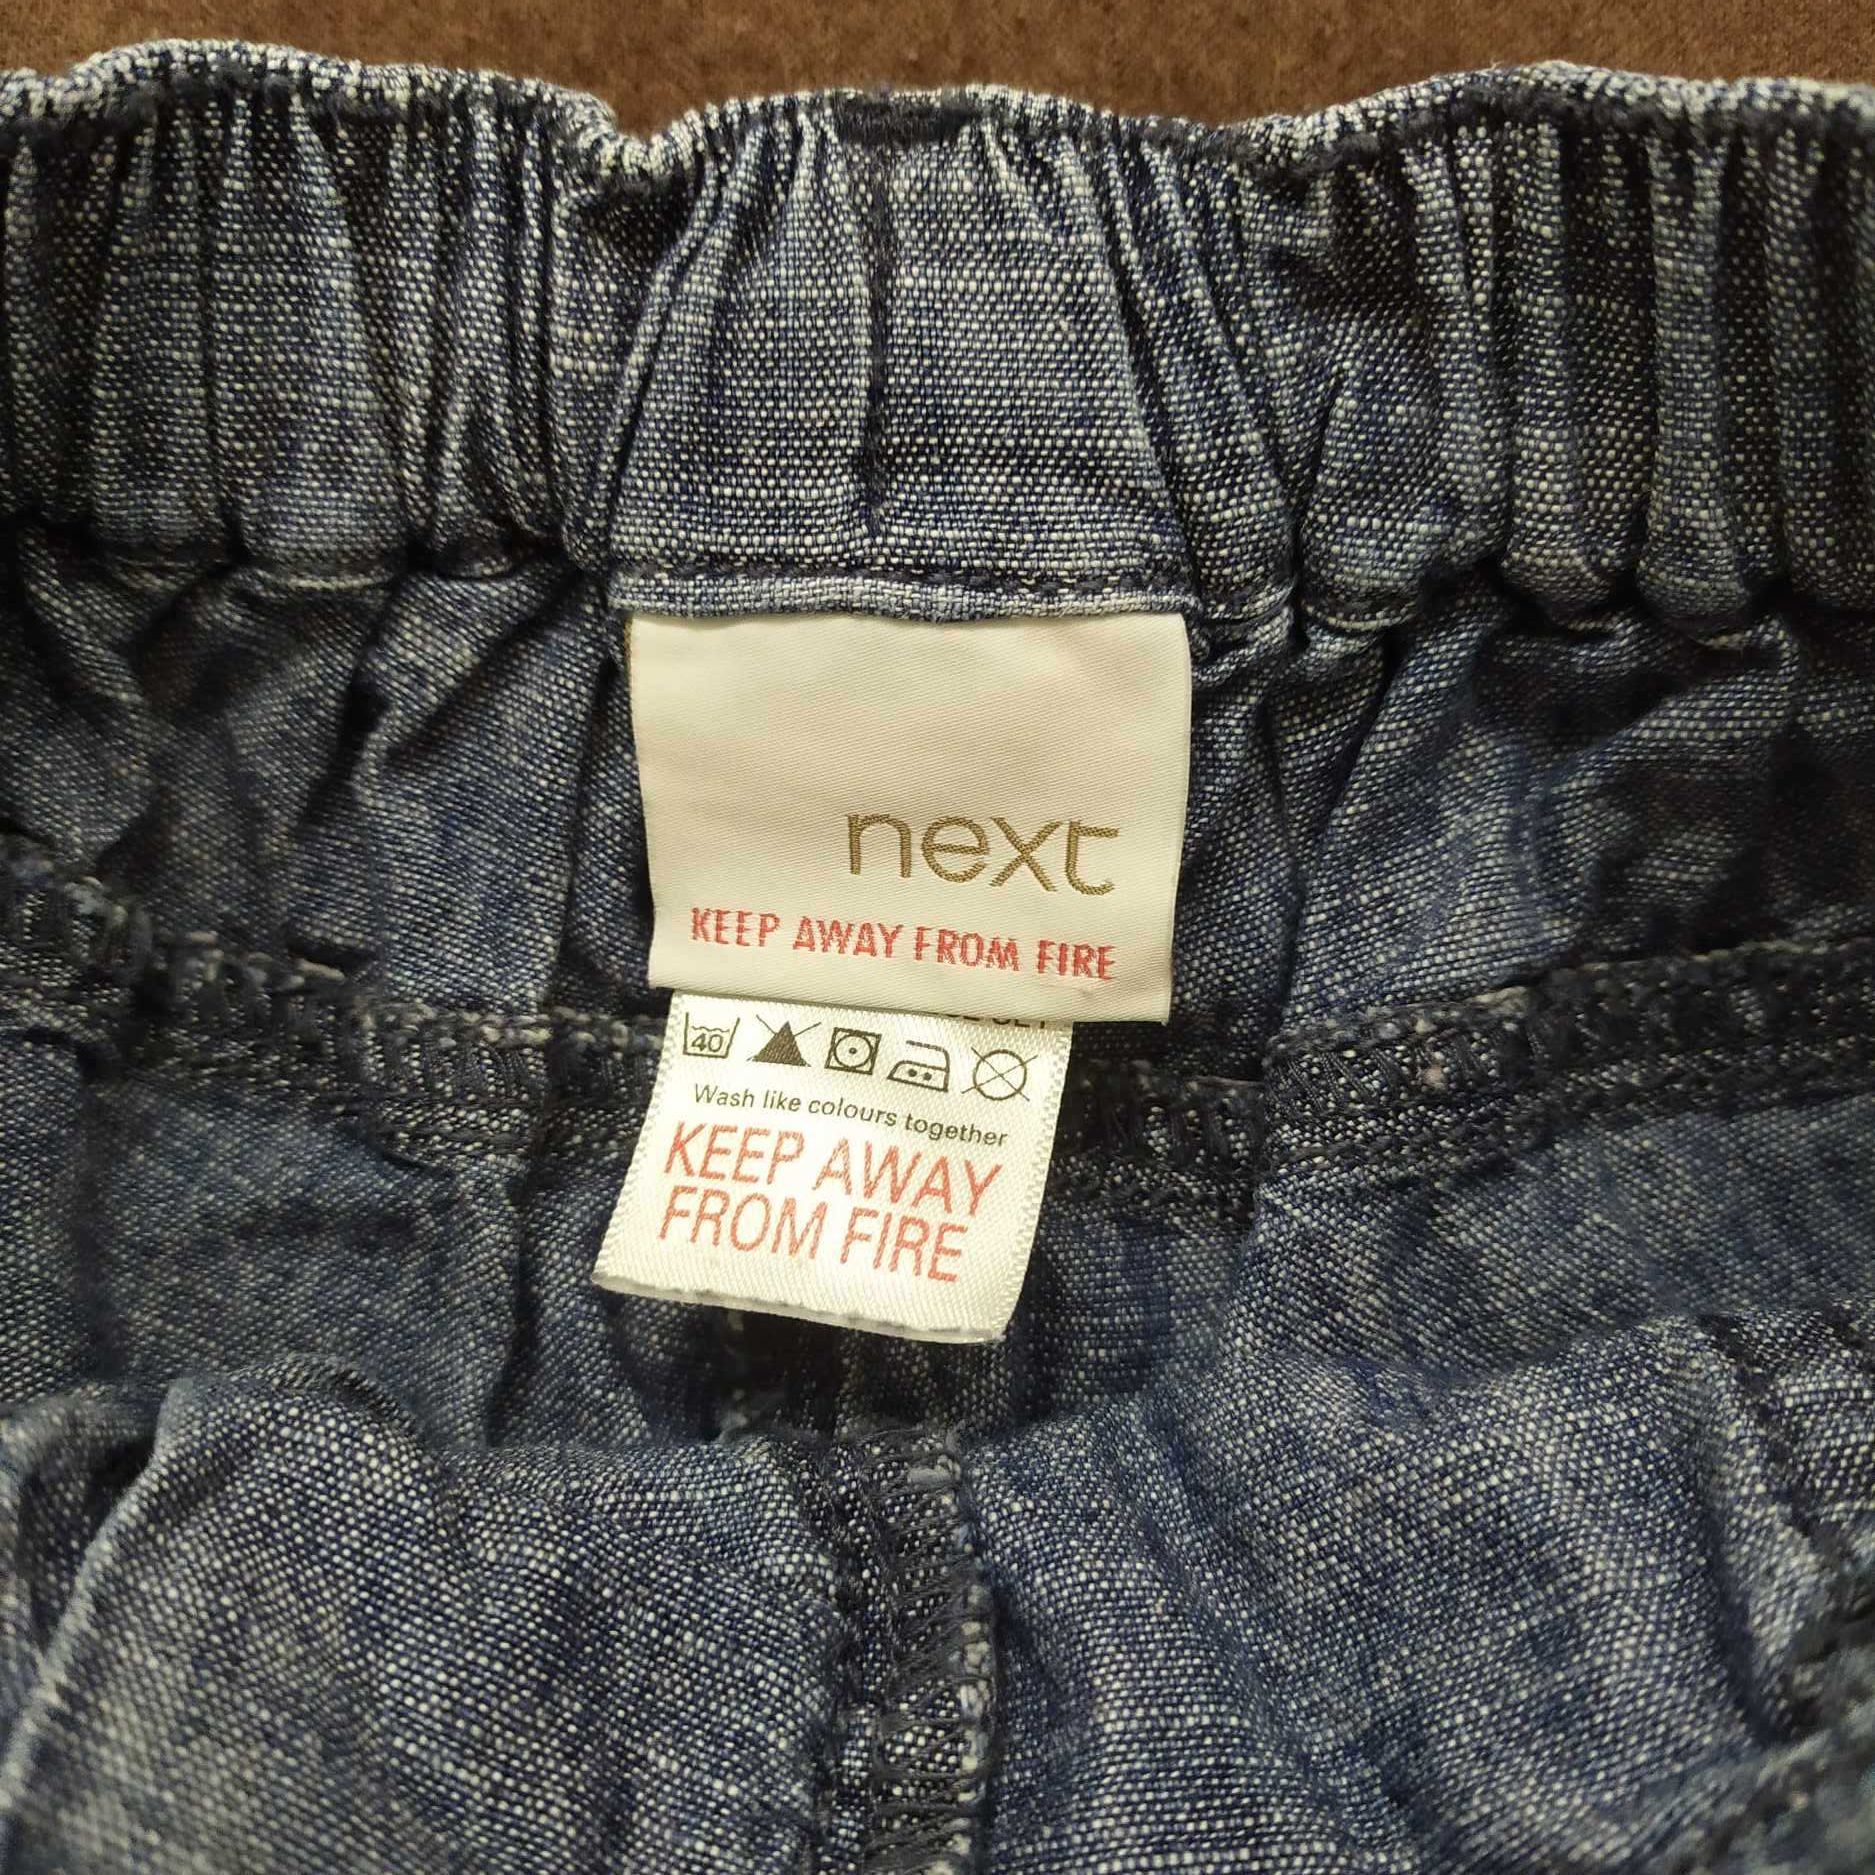 Chłopięce spodnie dresowe spodenki Next rozmiar 92 3 sztuki za 8zł.